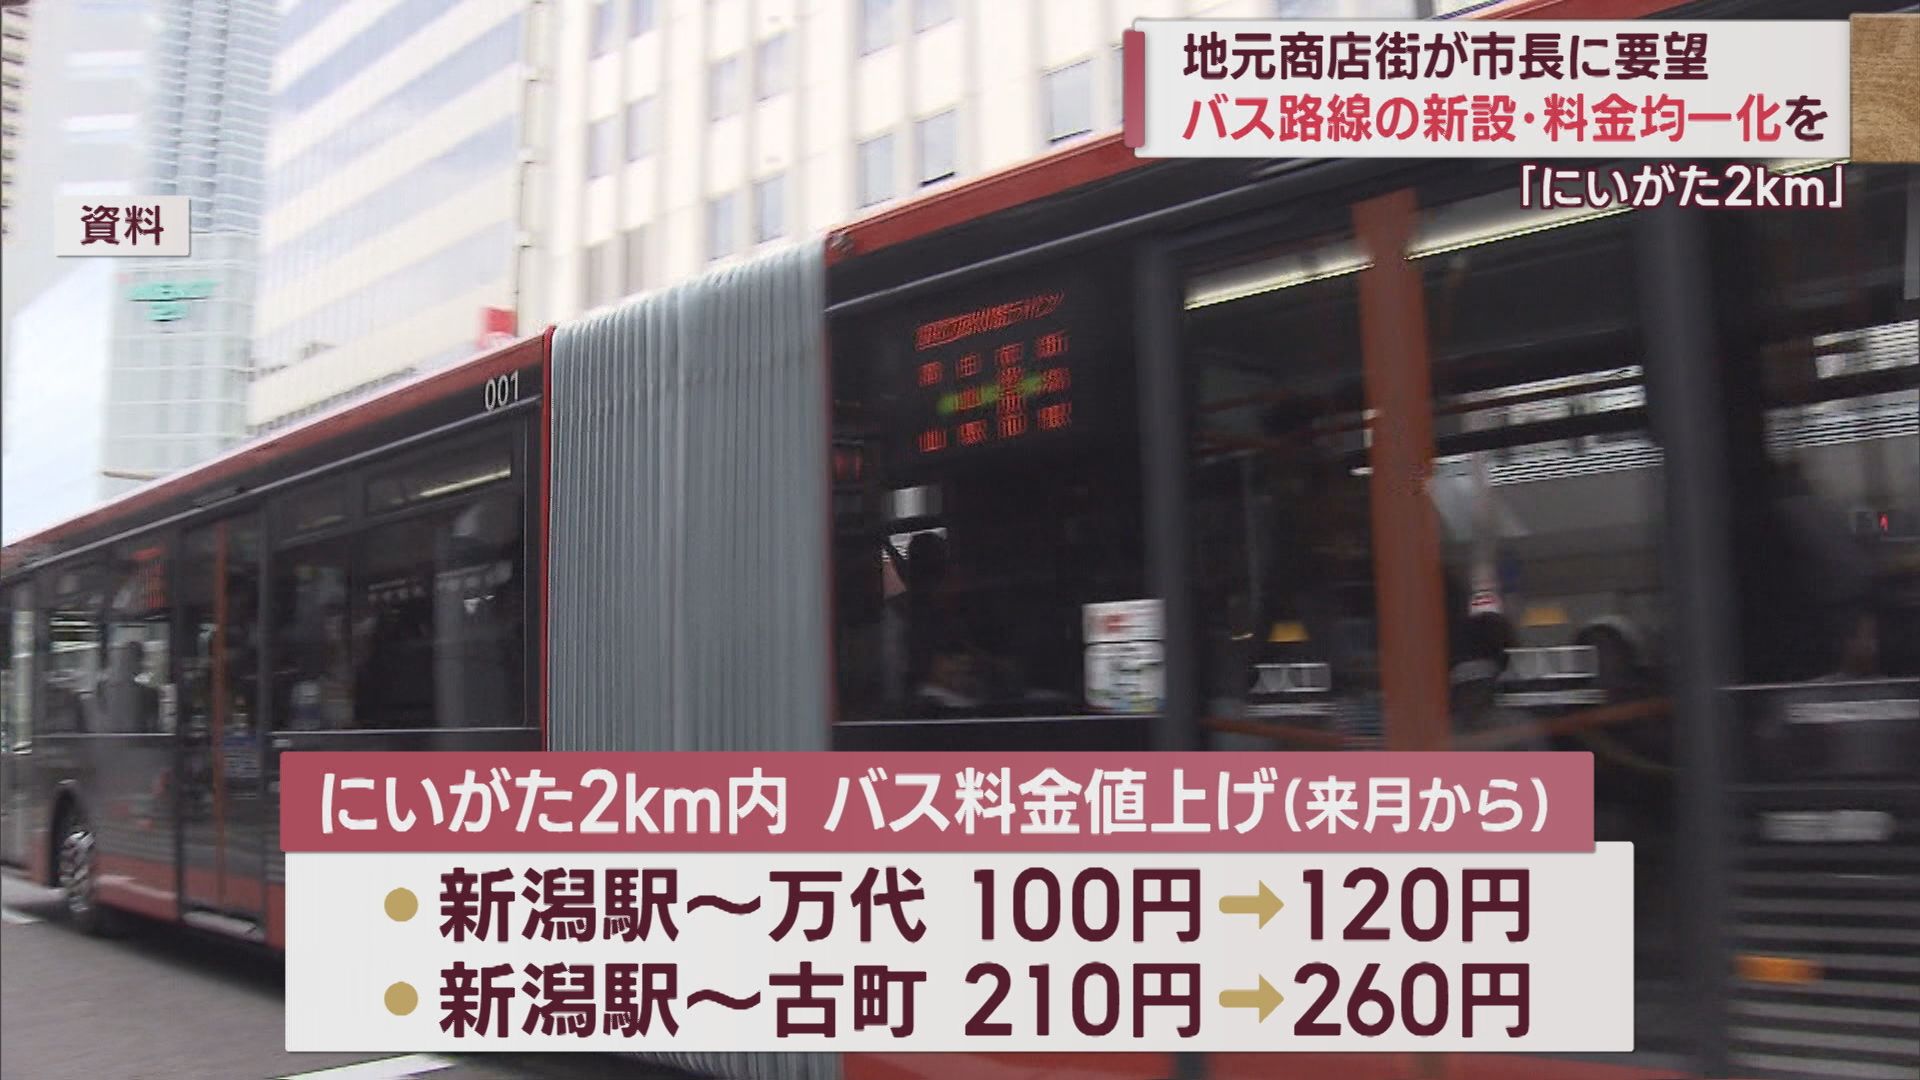 新たなバス路線を「にいがた2km」に 活性化に向け商店街が要望【新潟】